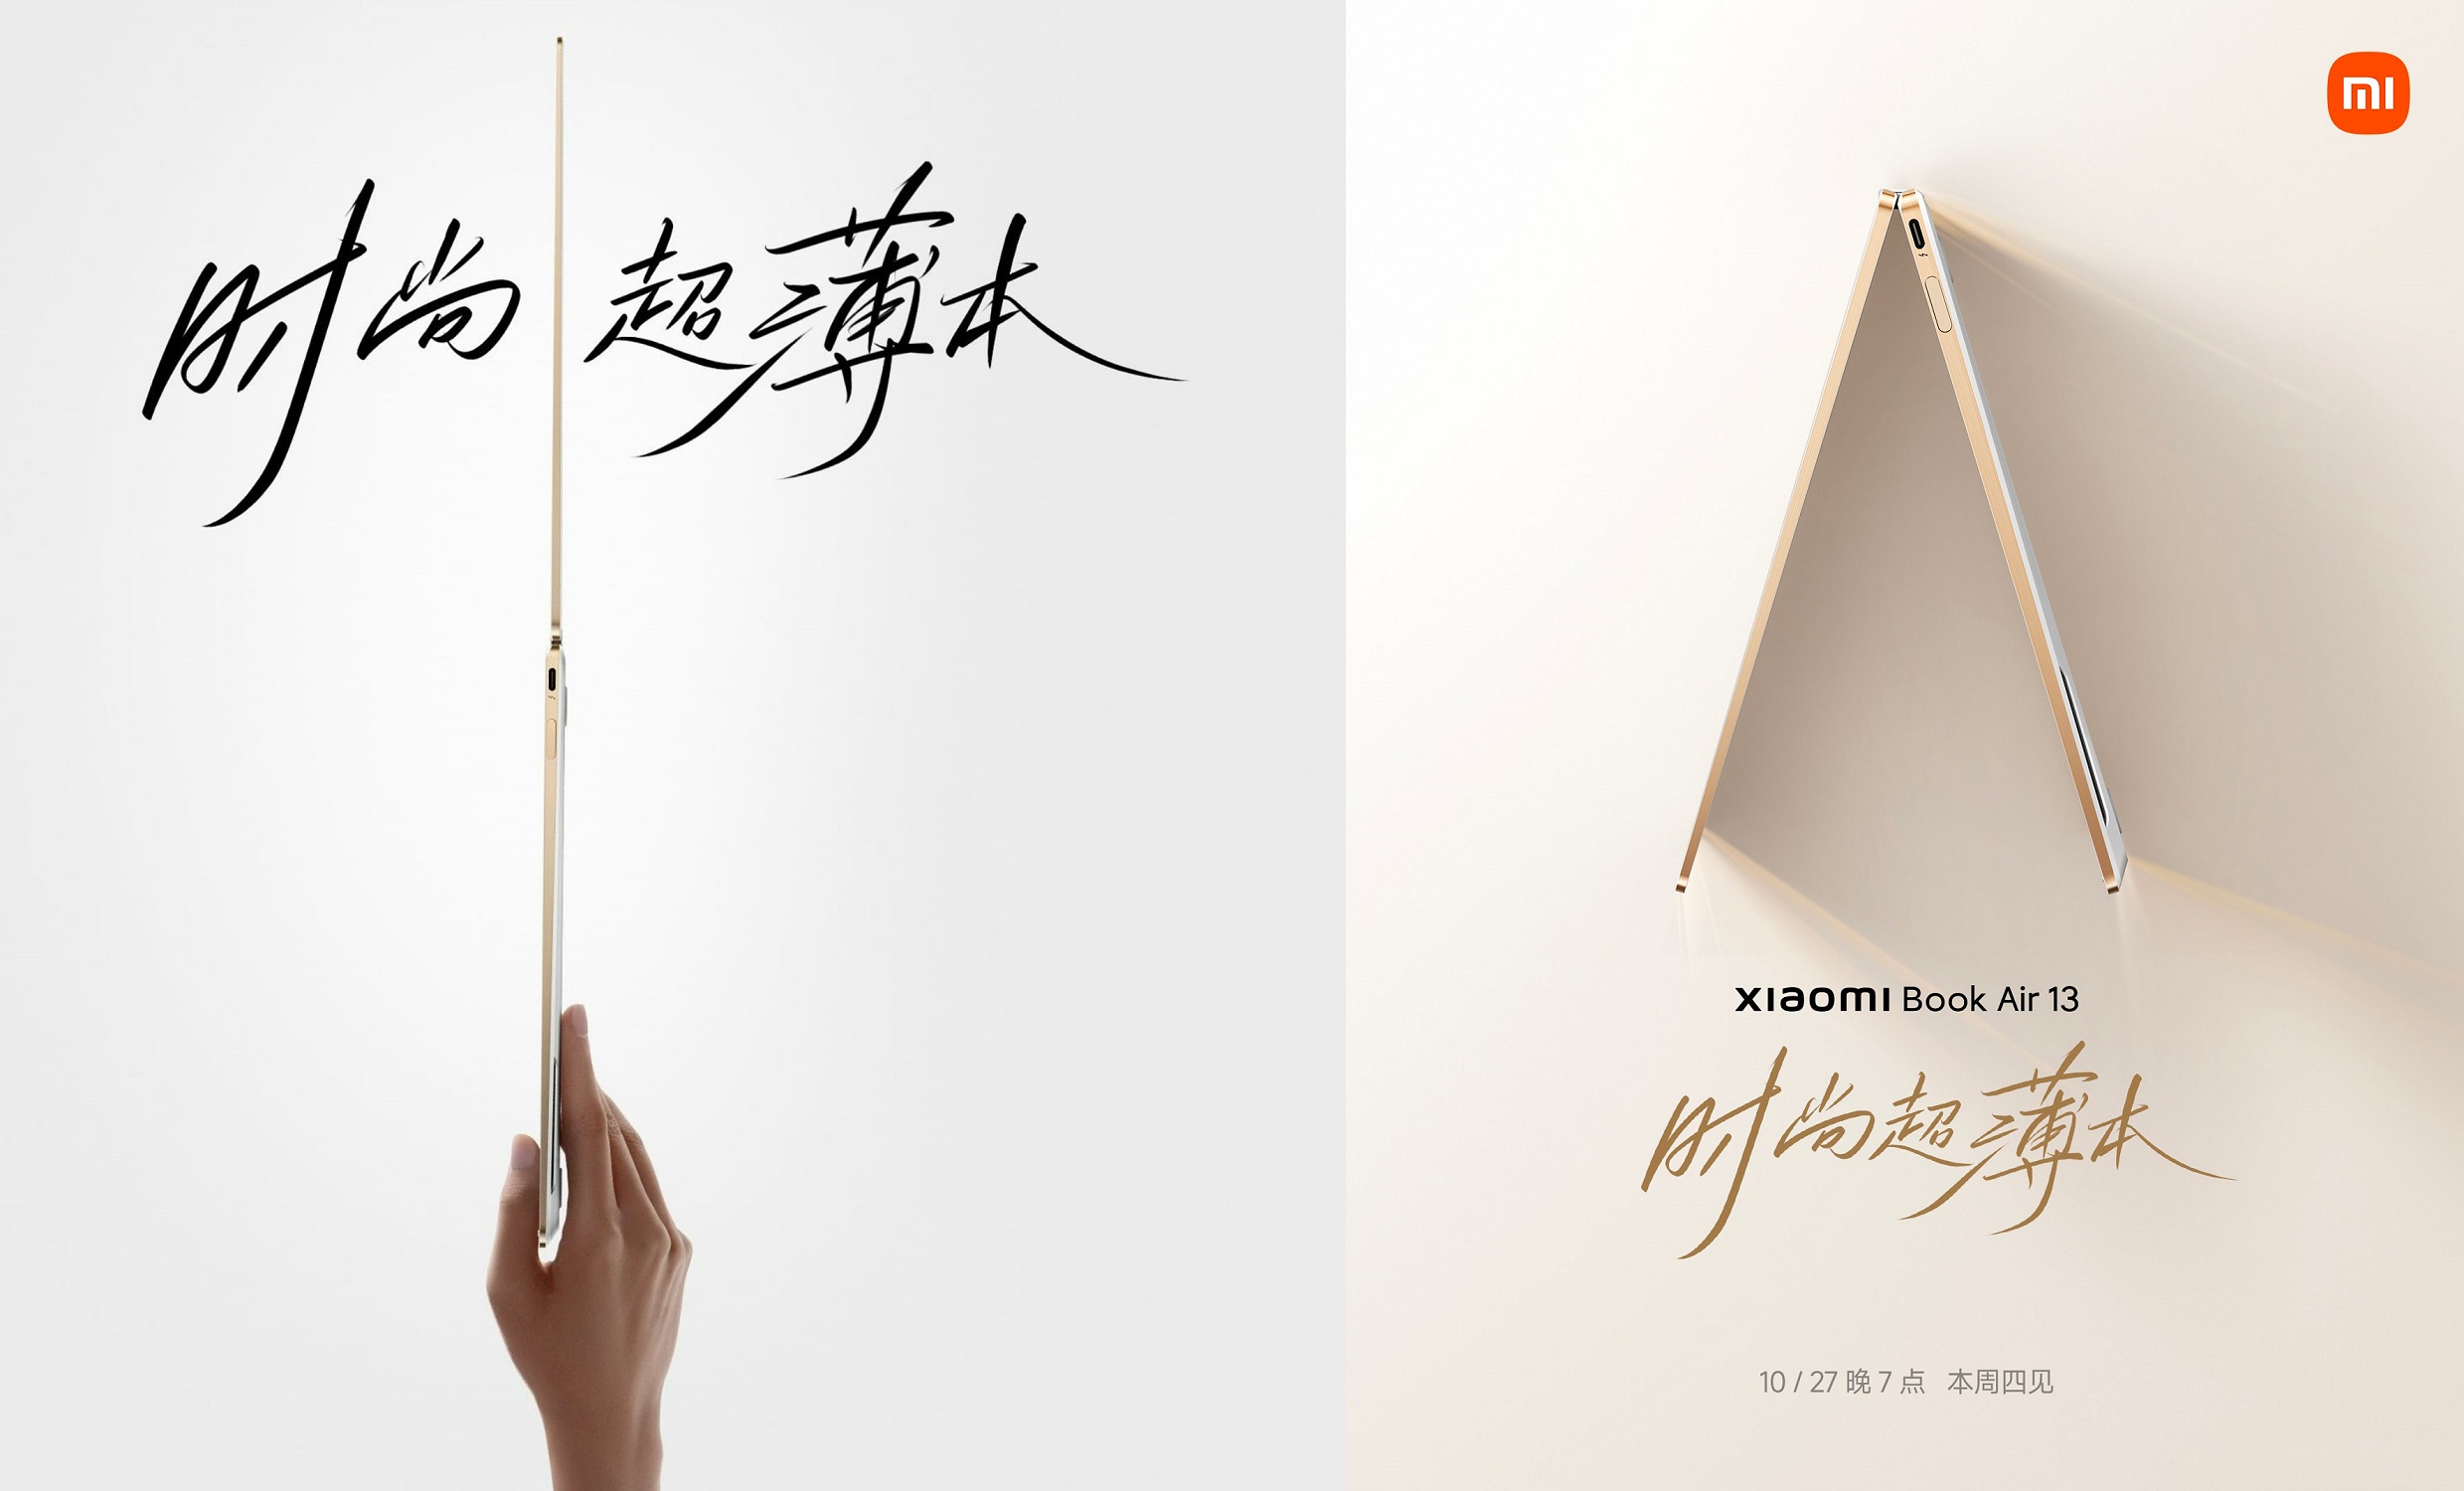 Xiaomi Book Air 13 launch date cn